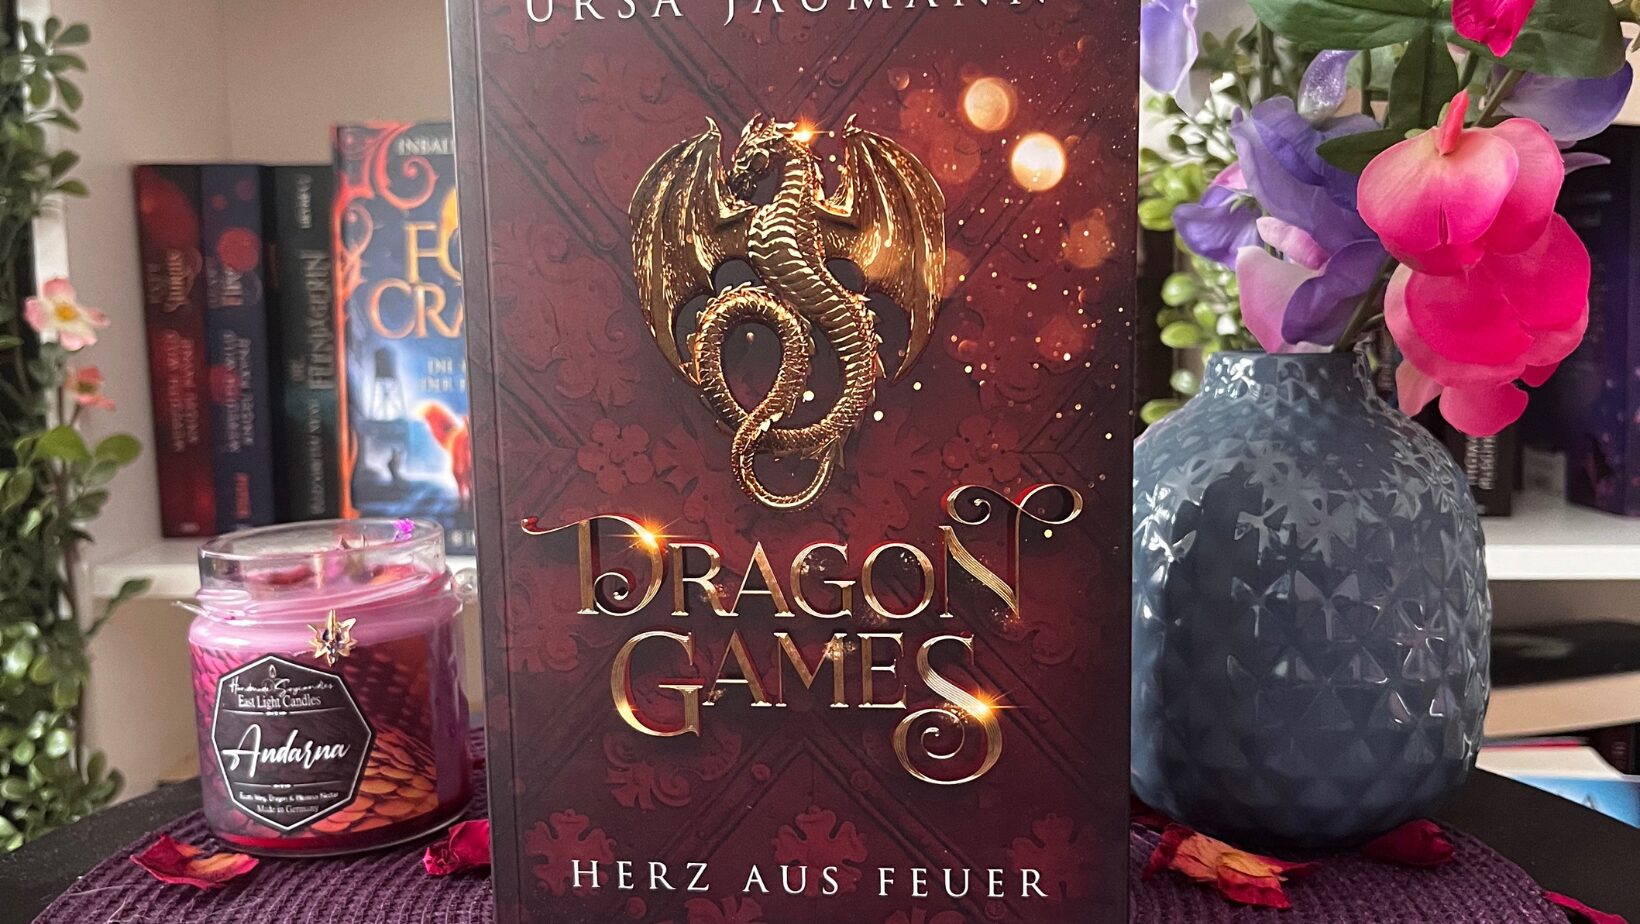 Das Bild zeigt ein Buch mit dem Titel "Dragon Games: Herz aus Feuer" von Ursa Jaumann. Das Cover des Buches ist in Rottönen gehalten und zeigt einen goldenen Drachen, der sich um ein Schwert windet. Das Buch steht auf einem runden, lila geflochtenen Untersetzer, der mit getrockneten Rosenblättern und kleinen lila Teelichtern dekoriert ist. Im Hintergrund sind unscharf weitere Bücher und eine Vase mit bunten Blumen zu sehen.